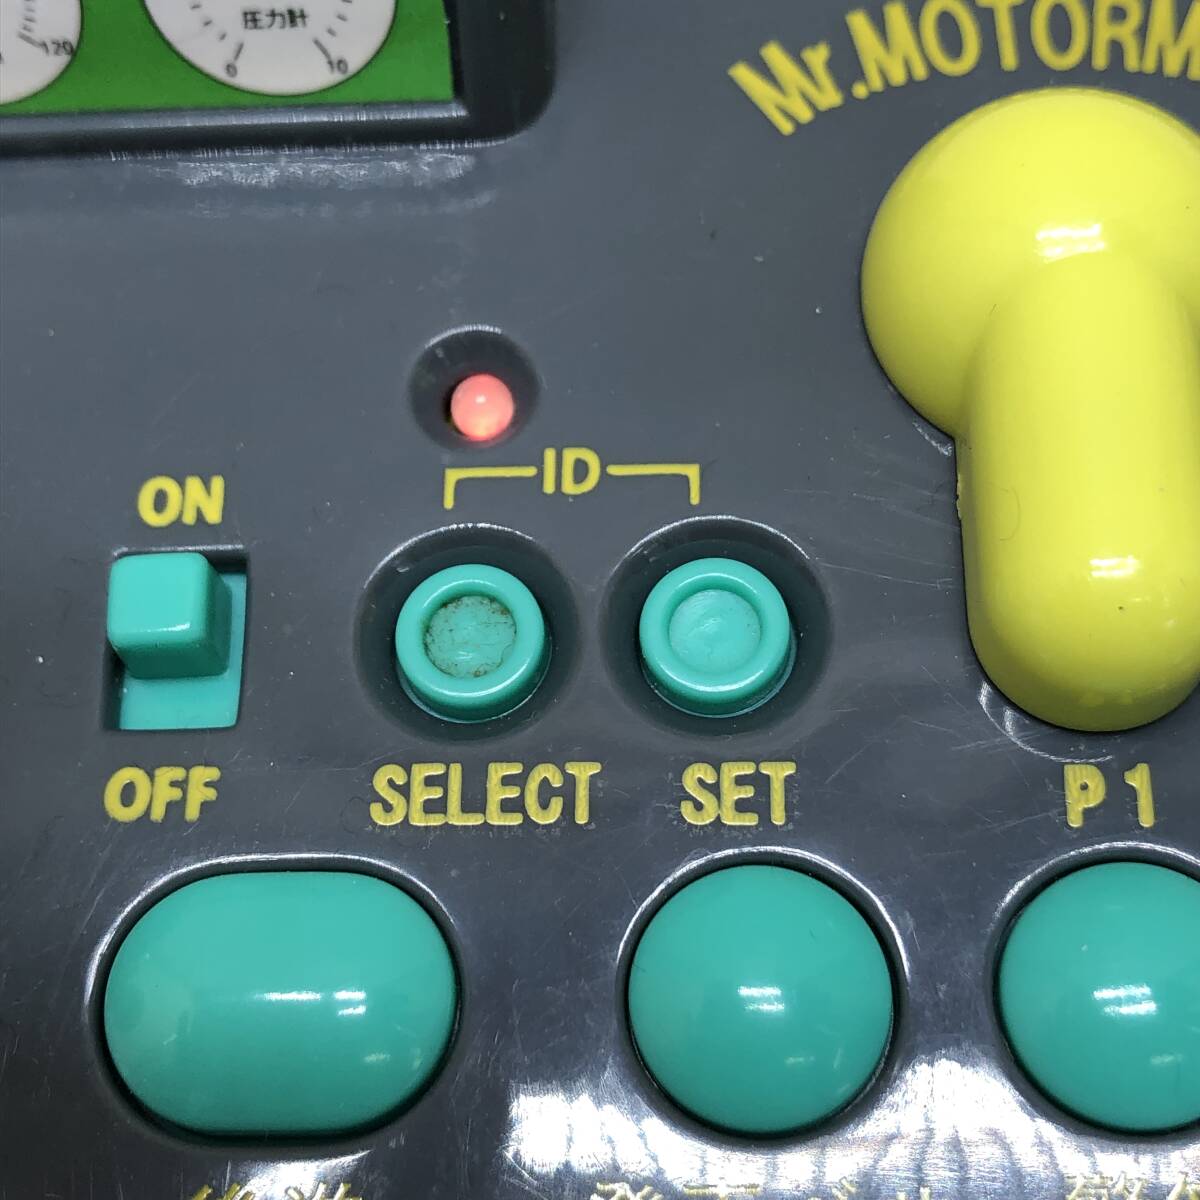 ^ Mr. motor man движение ....AD дистанционный пульт движение электропоезд игра игрушка электризация только проверка settled текущее состояние товар ^C73595